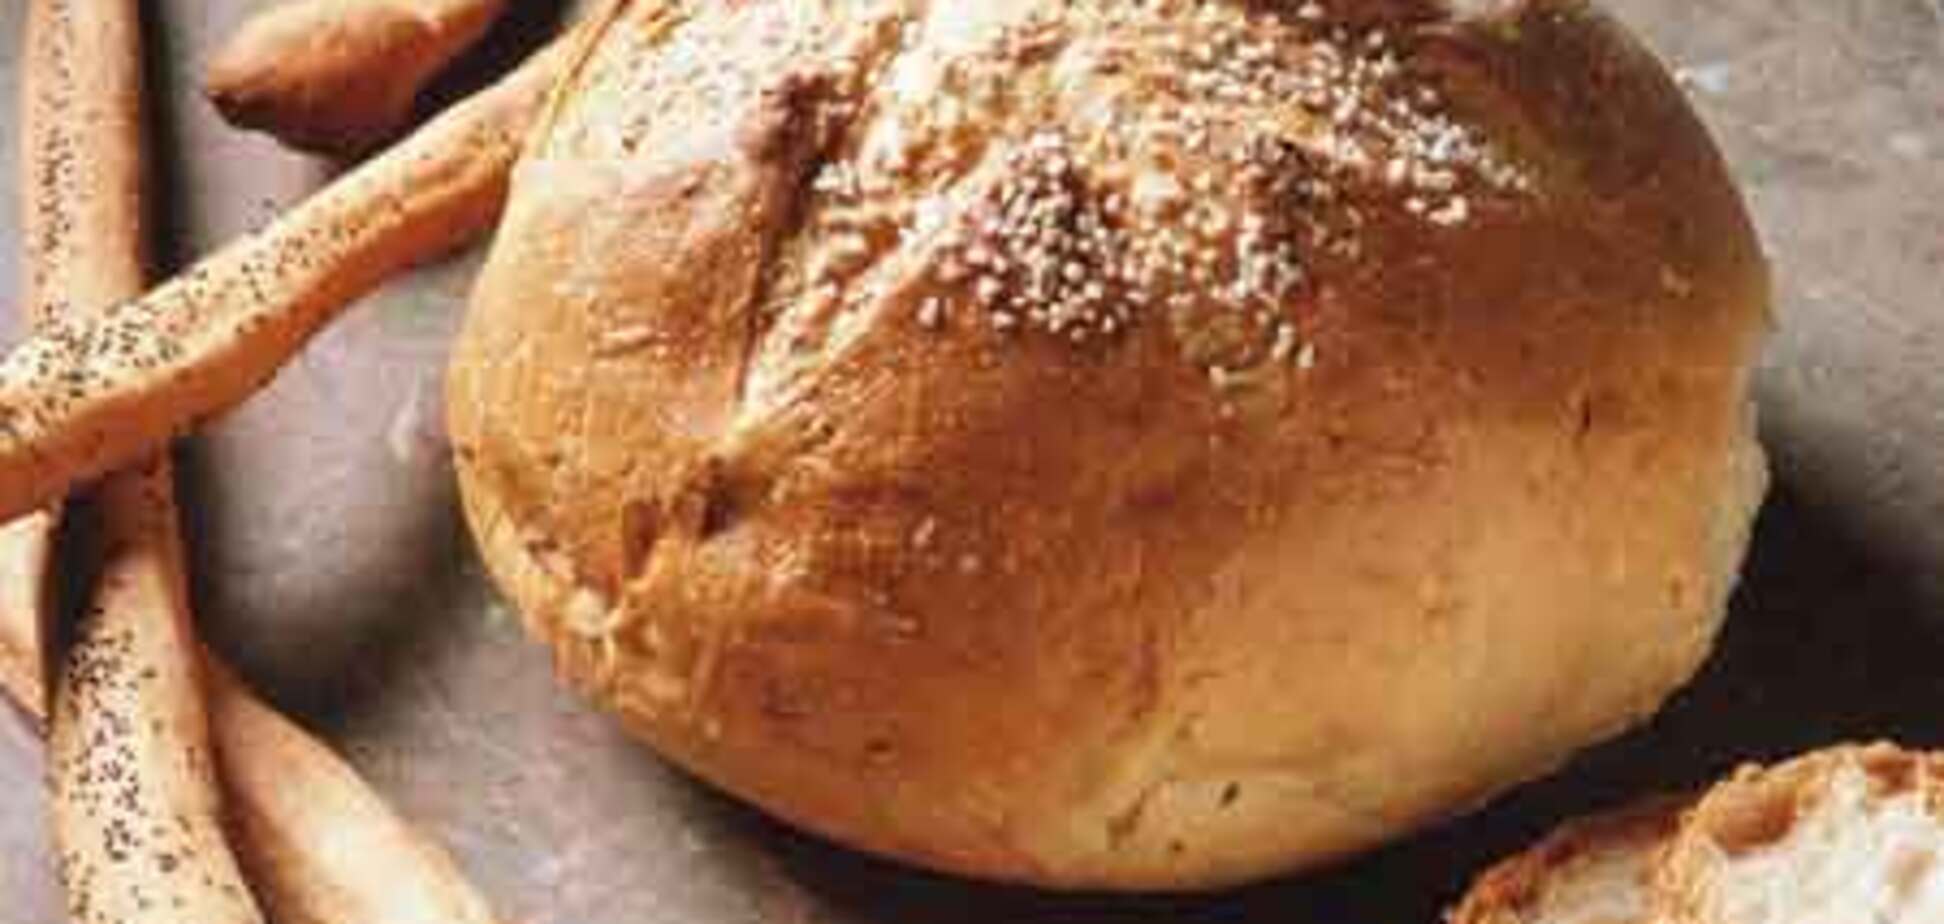 Идеальный базовый рецепт хлеба